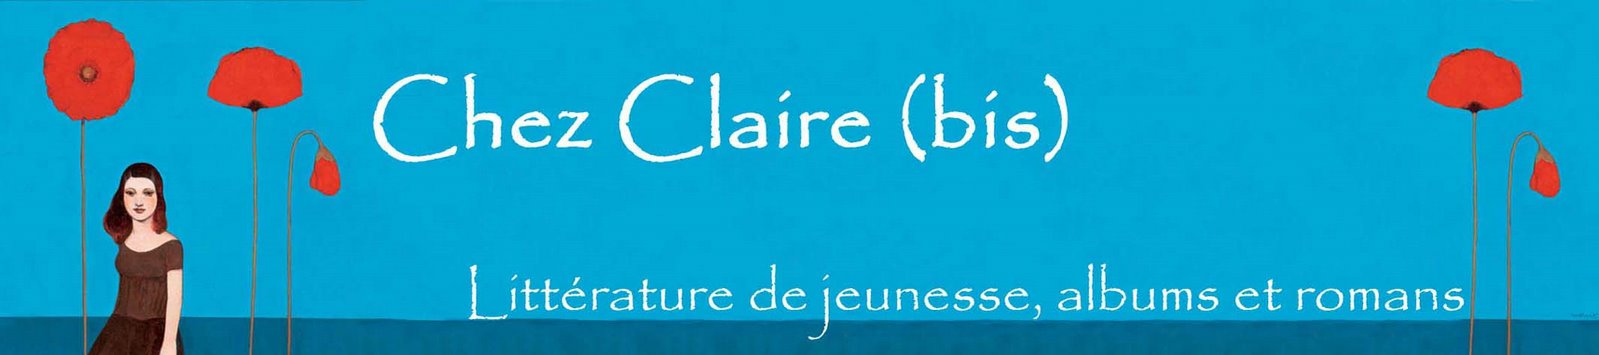 Chez Claire bis